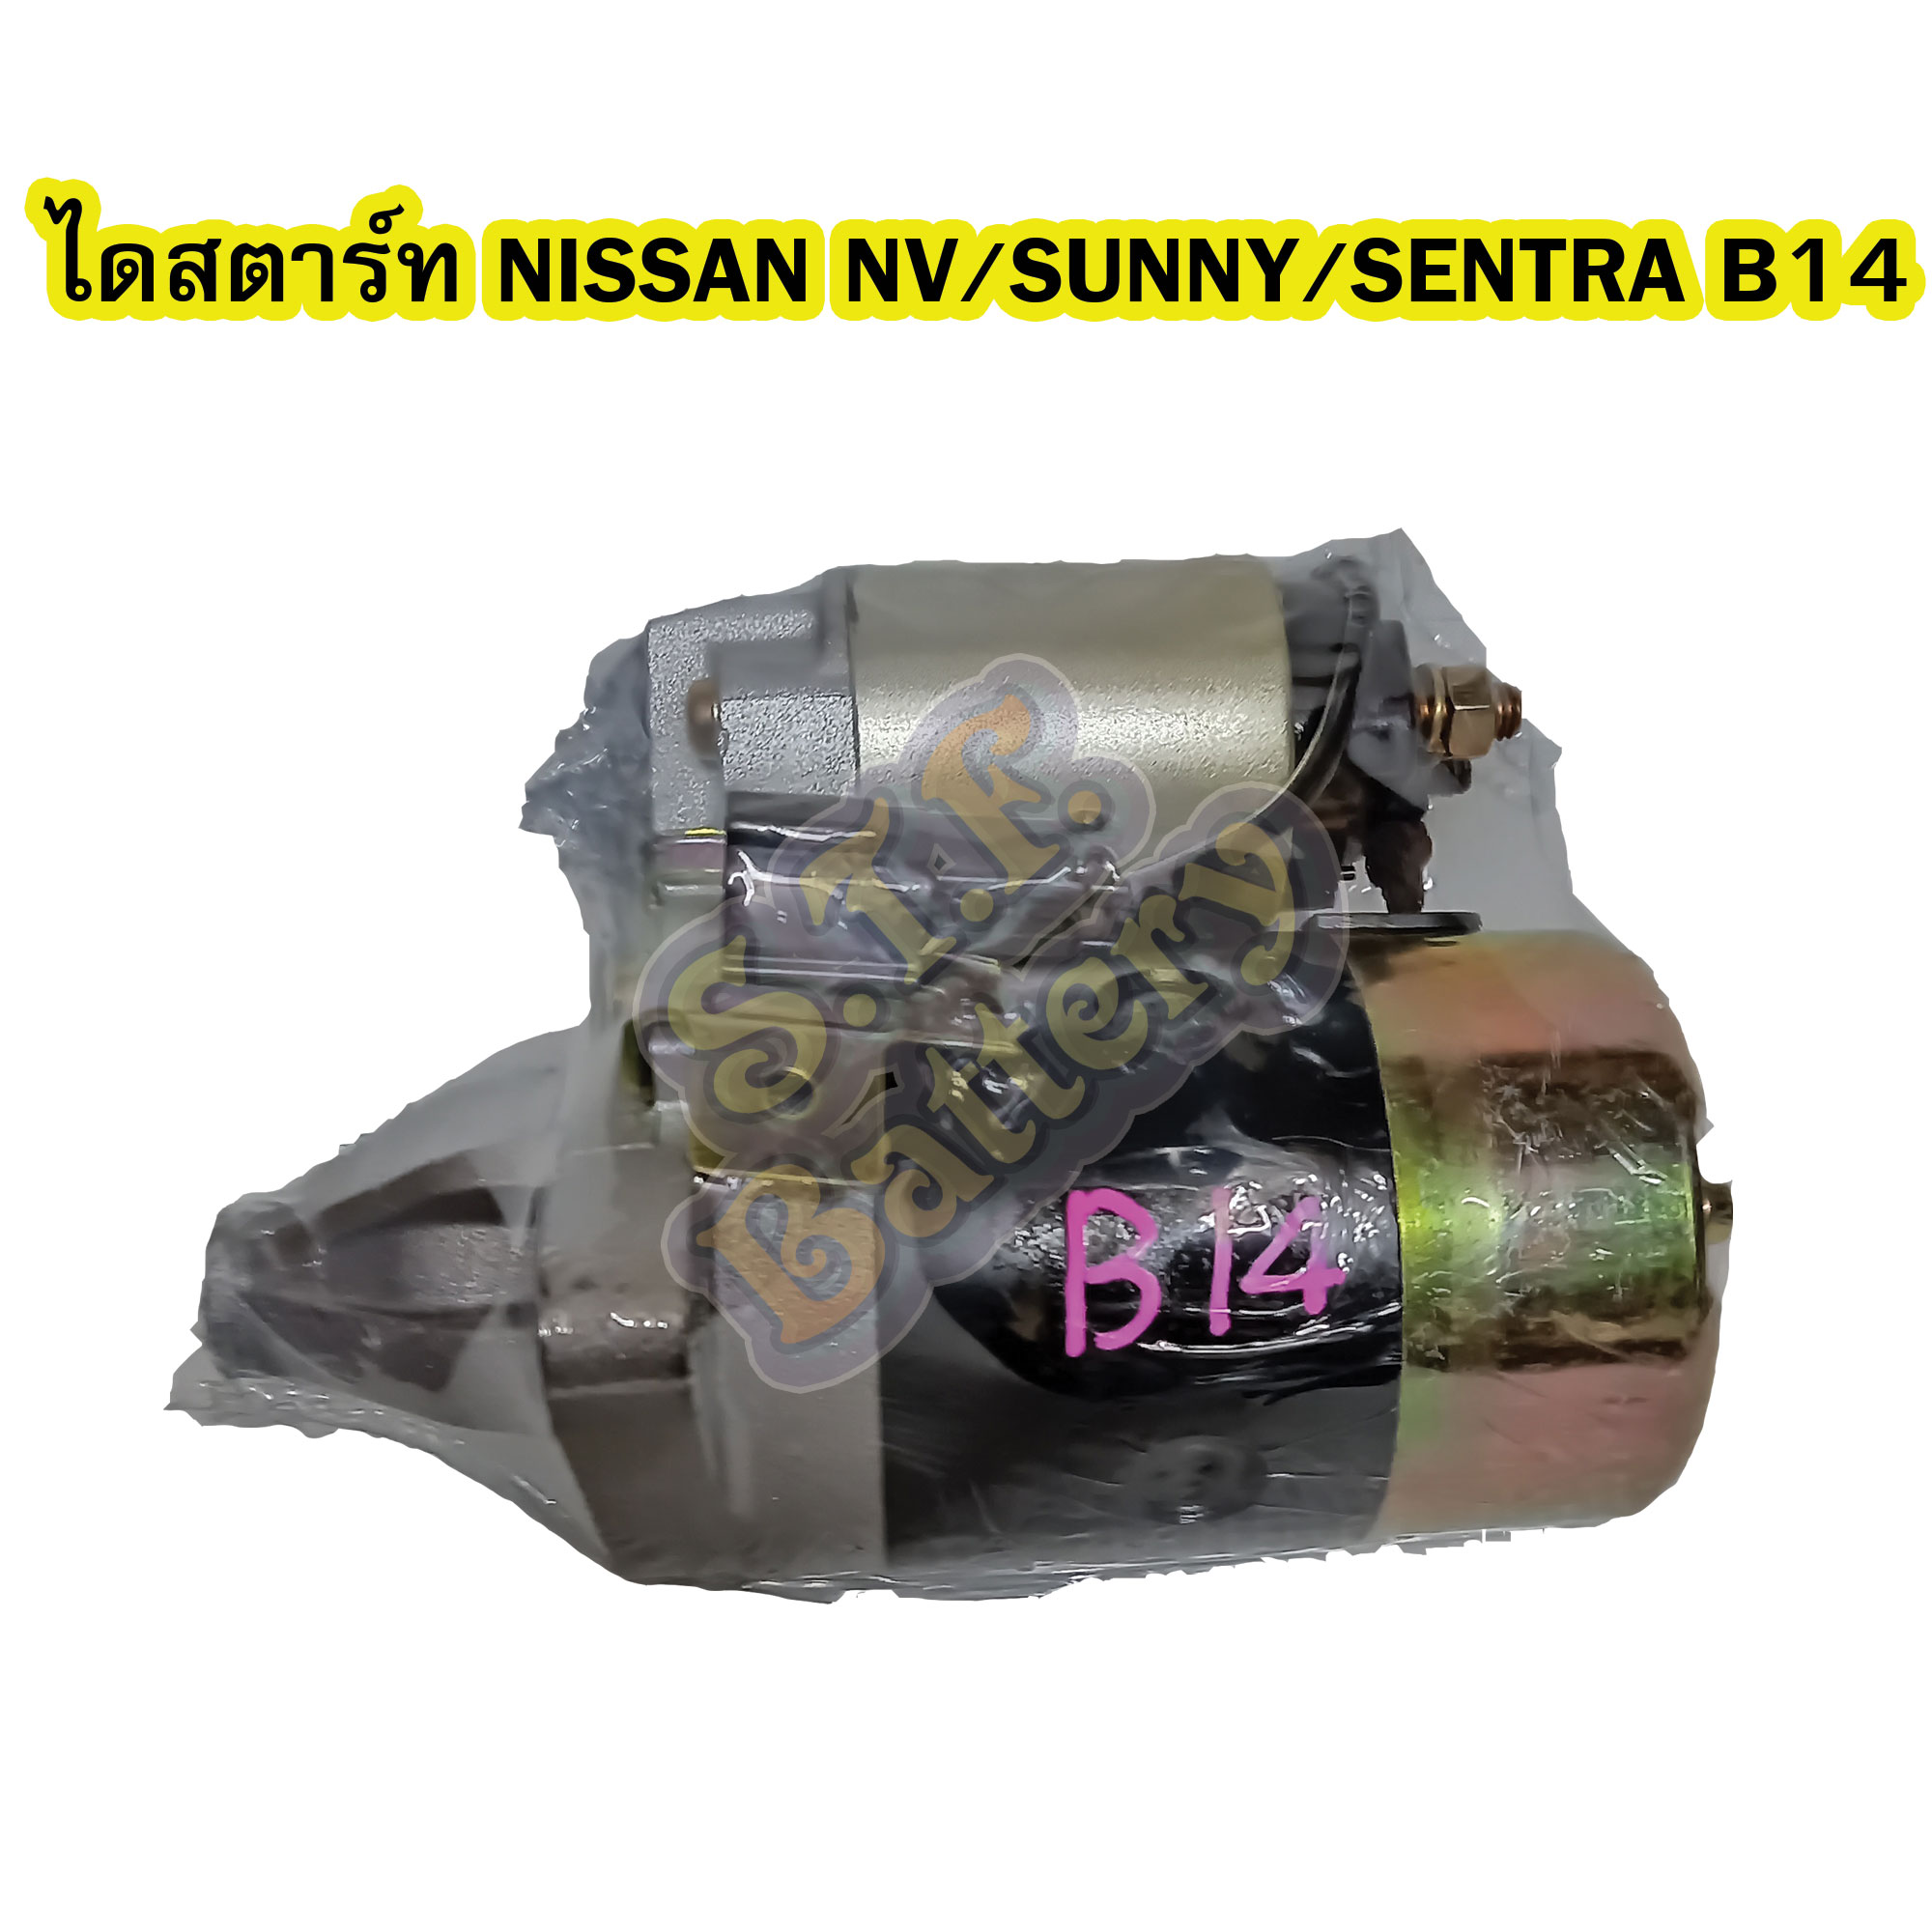 ไดสตาร์ทบิ้ว (Starter Built) รถยนต์นิสสัน เอ็นวี/ซันนี่/เซนทรา บี14 (NISSAN NV/SUNNY/SENTRA B14)